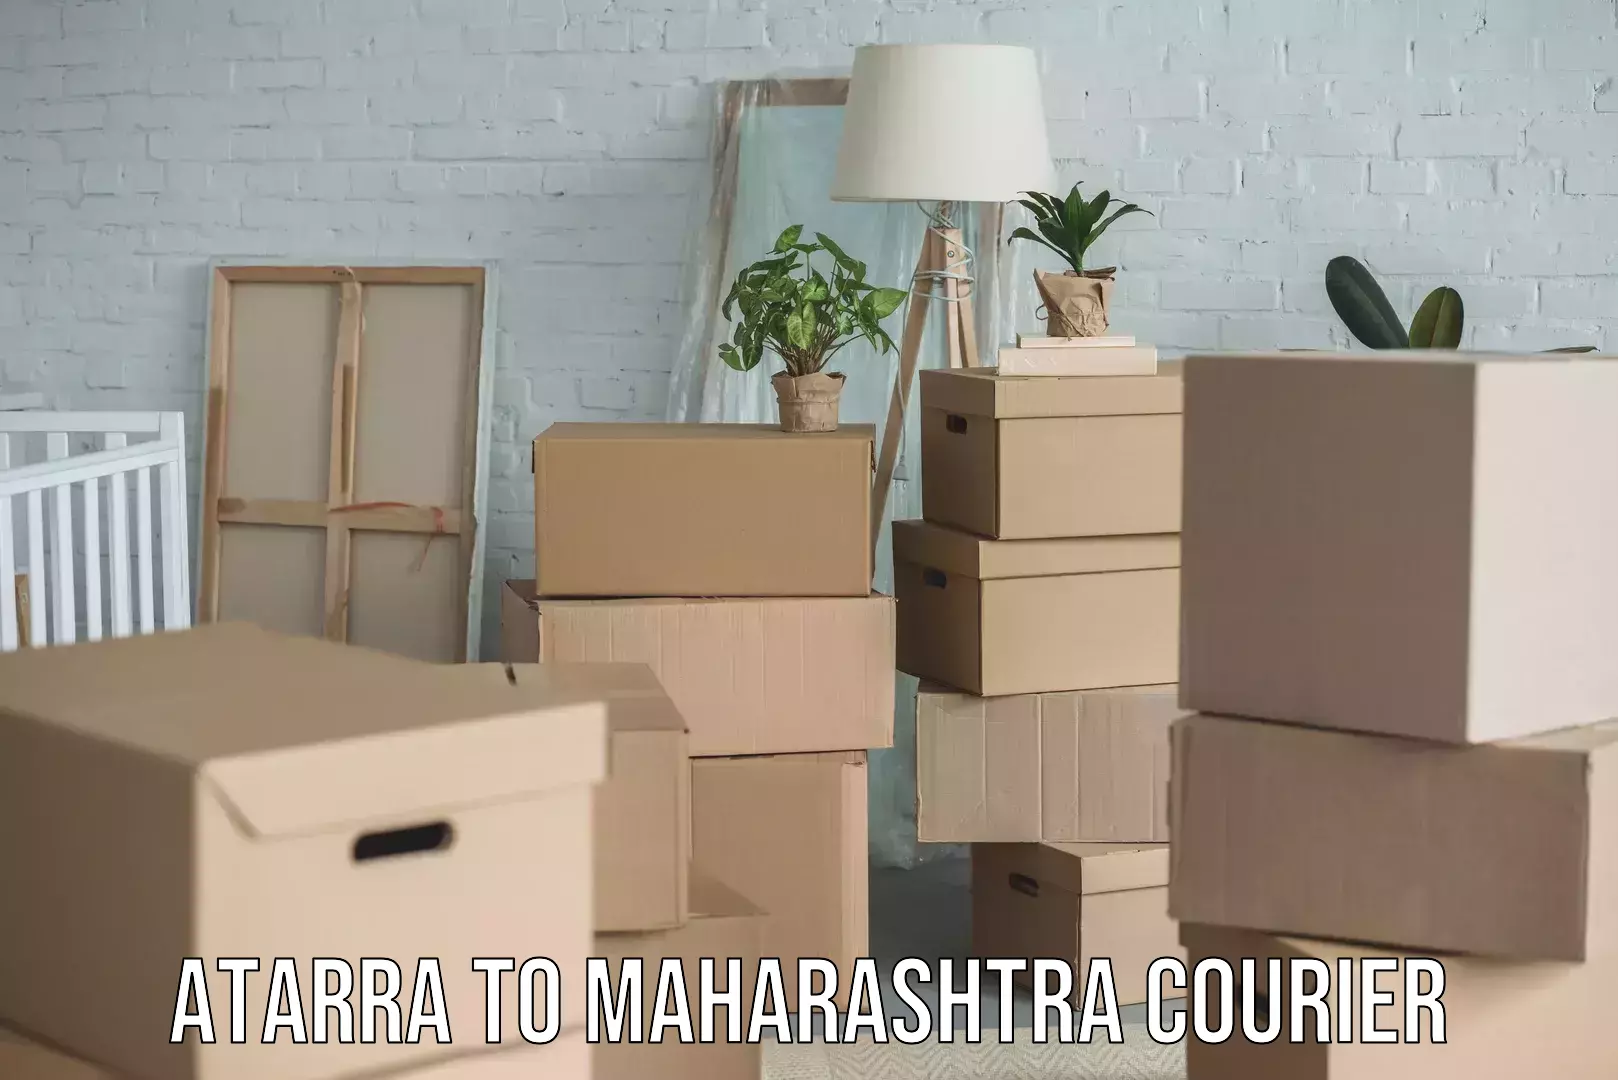 Easy return solutions in Atarra to Maharashtra